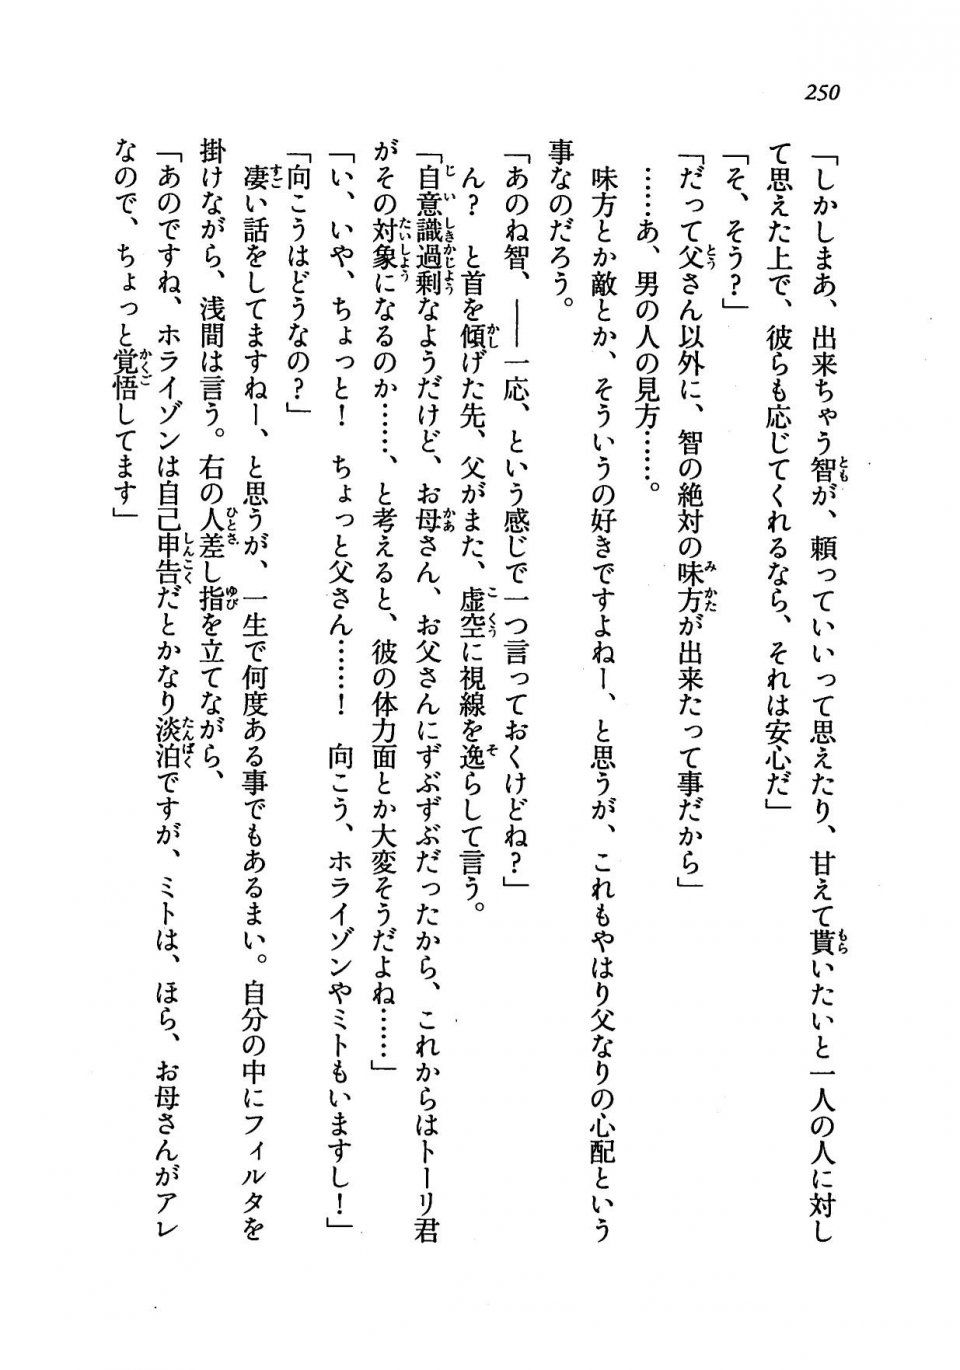 Kyoukai Senjou no Horizon LN Vol 19(8A) - Photo #250